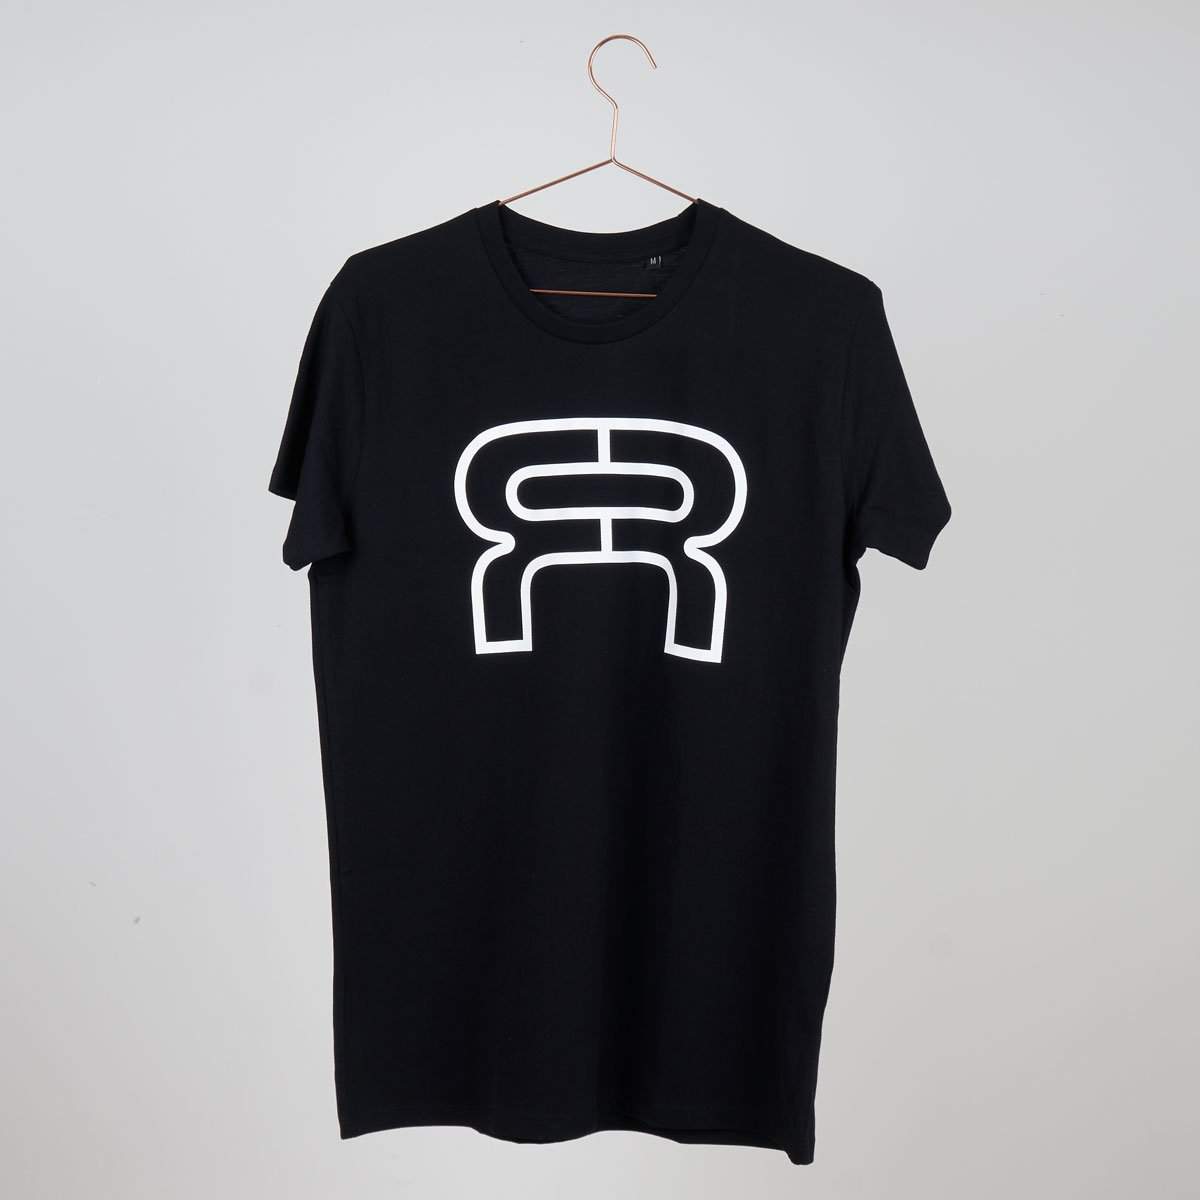 FR T-shirt Black-FR Skates-Aggressive Skate,black,Clothing,T-shirts